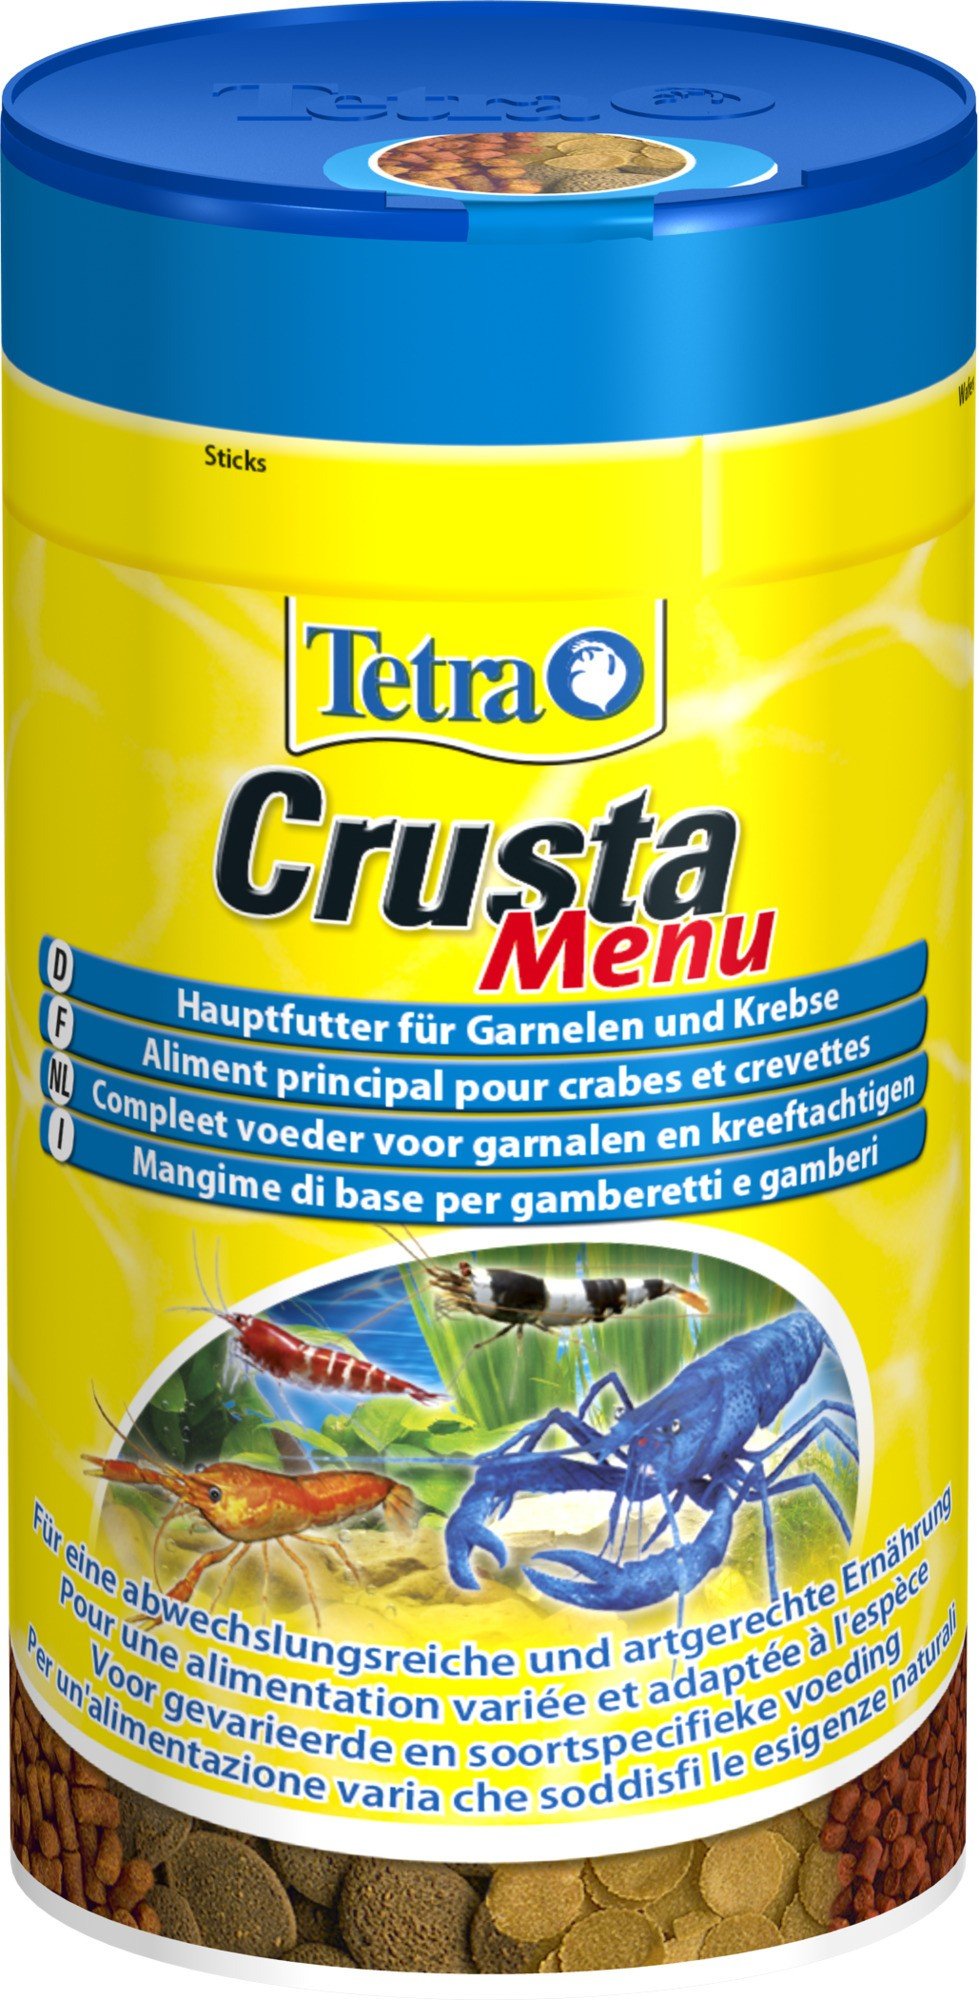 Tetra CrustaMenu Special für Garnelen und Krebse